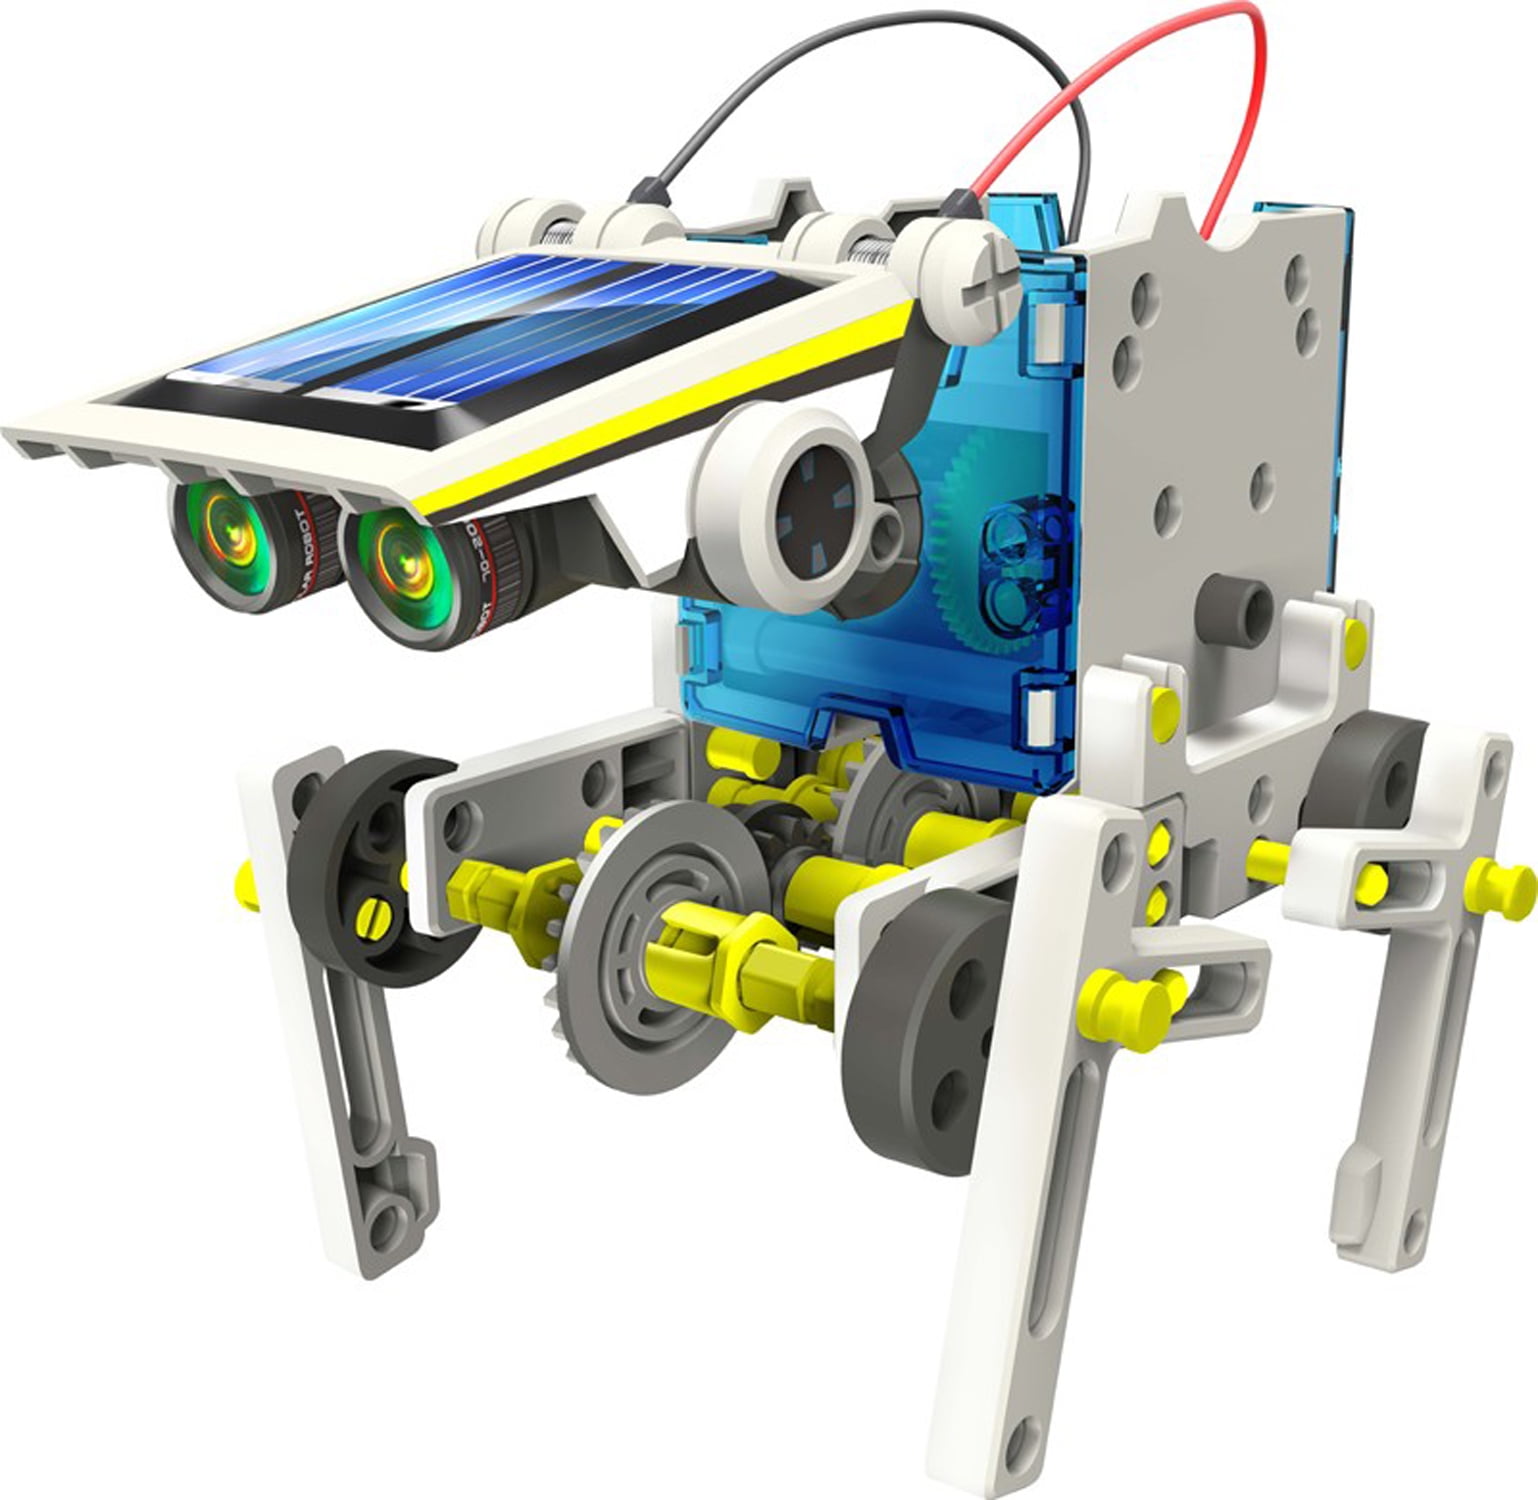 Robot solaire 14 en 1 KSR13 Velleman - Robots didactiques